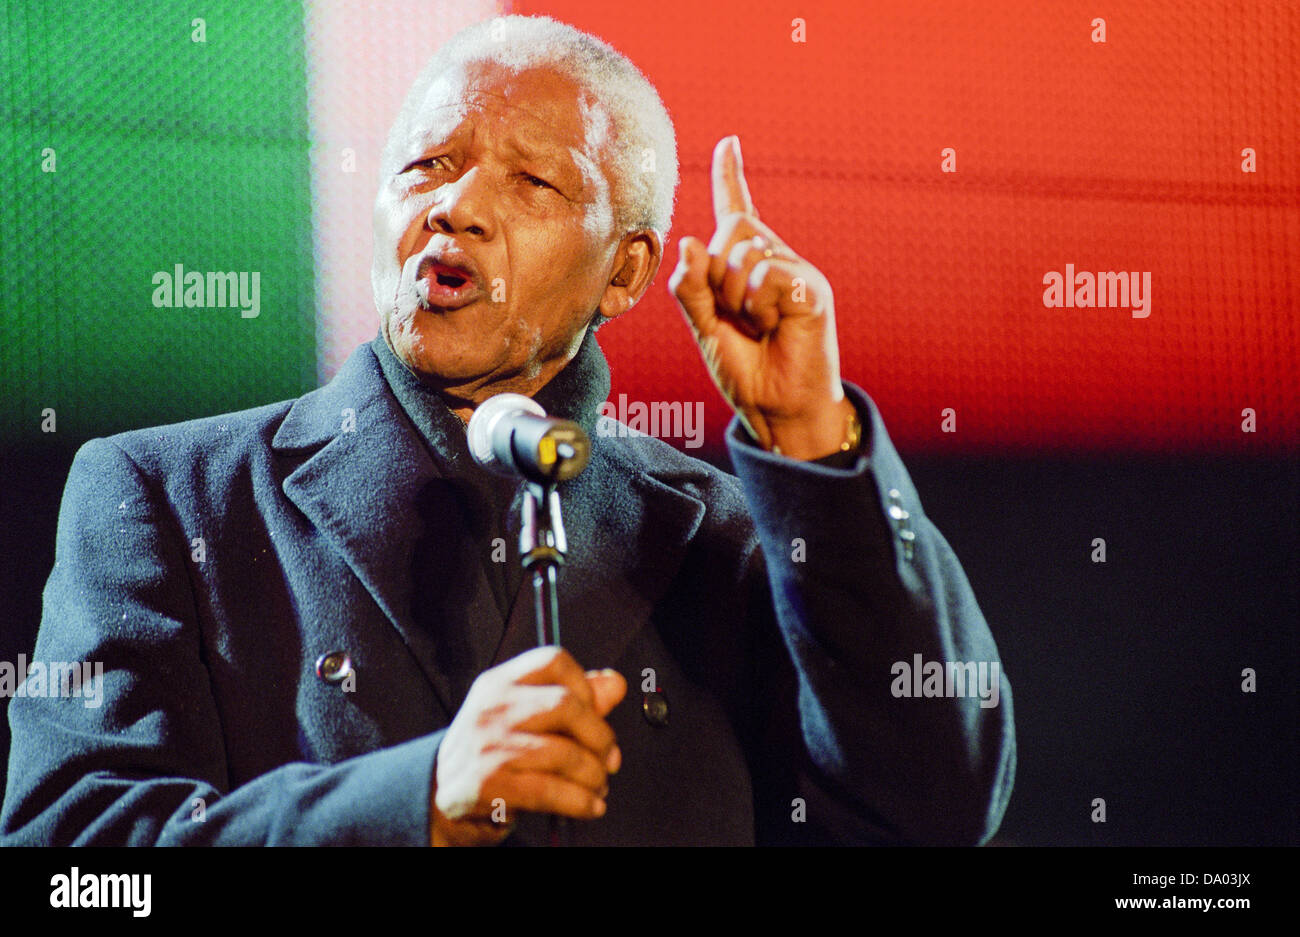 Nelson Mandela, finger raised, speaks at the Celebrate South Africa concert in Trafalgar Square, London, England, UK. Stock Photo